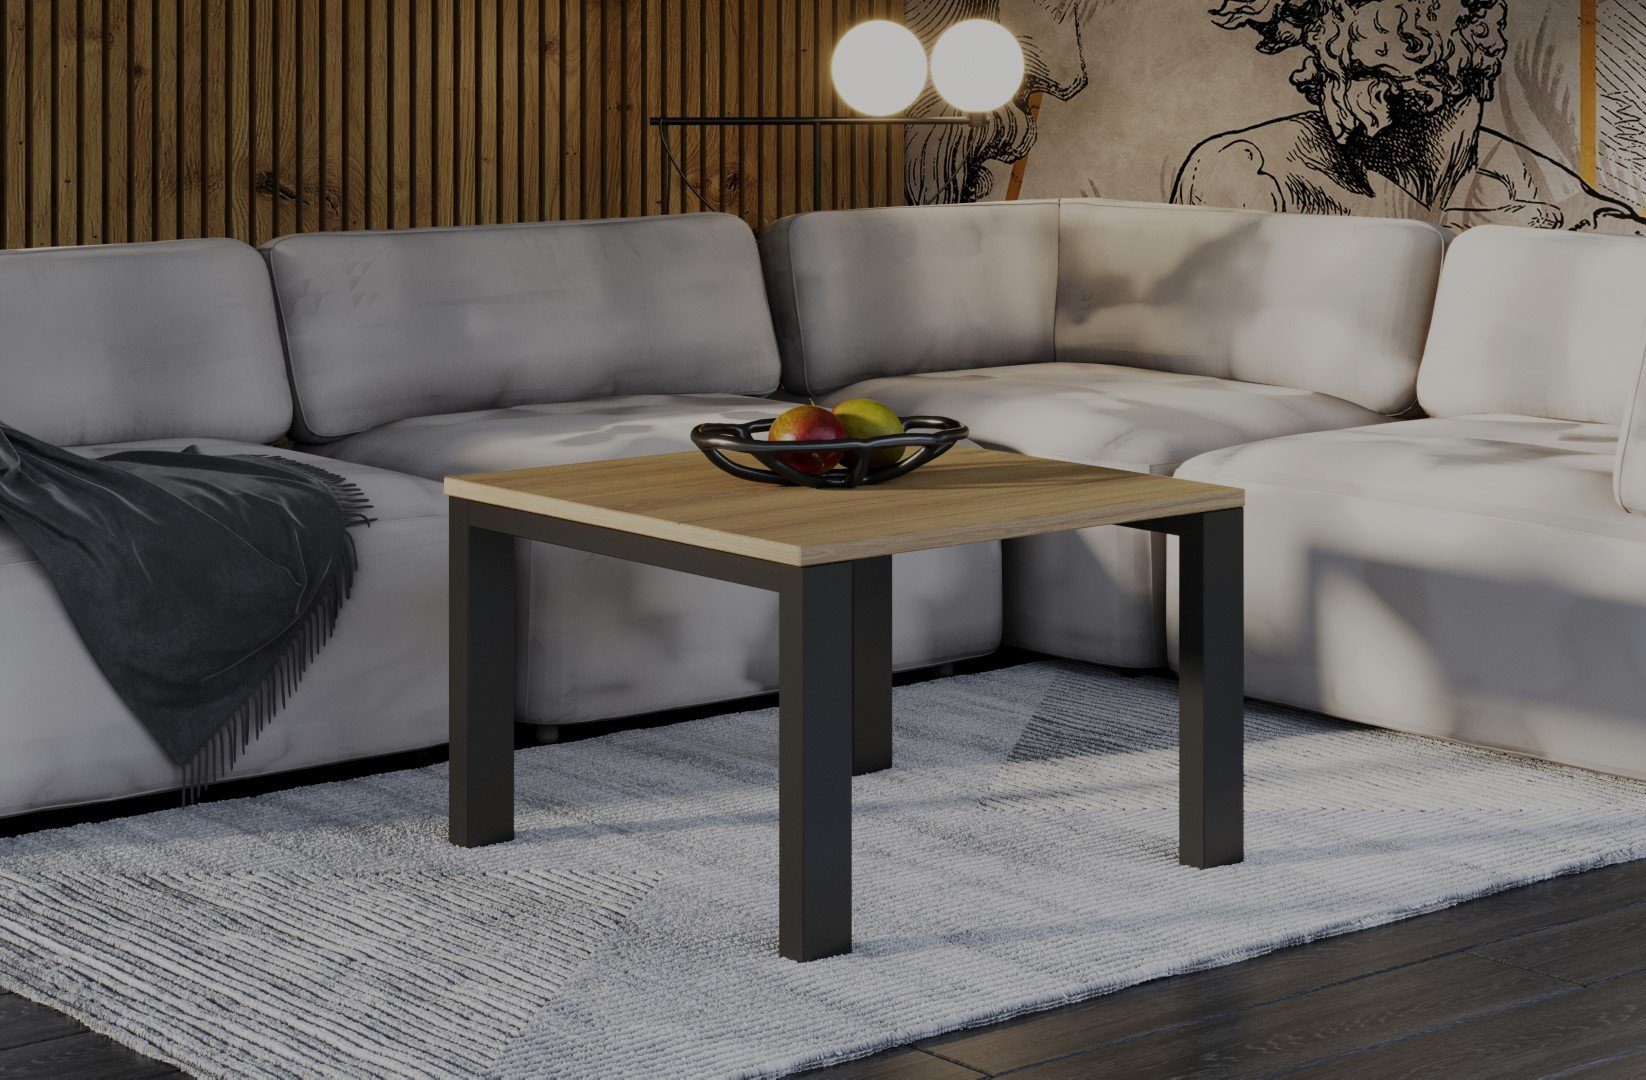 Endo-Moebel Couchtisch Natur Metallgestell Garold Eiche Tisch, Wohnzimmertisch, / cm 80 leicht hochwertiger aufzubauen 120cm